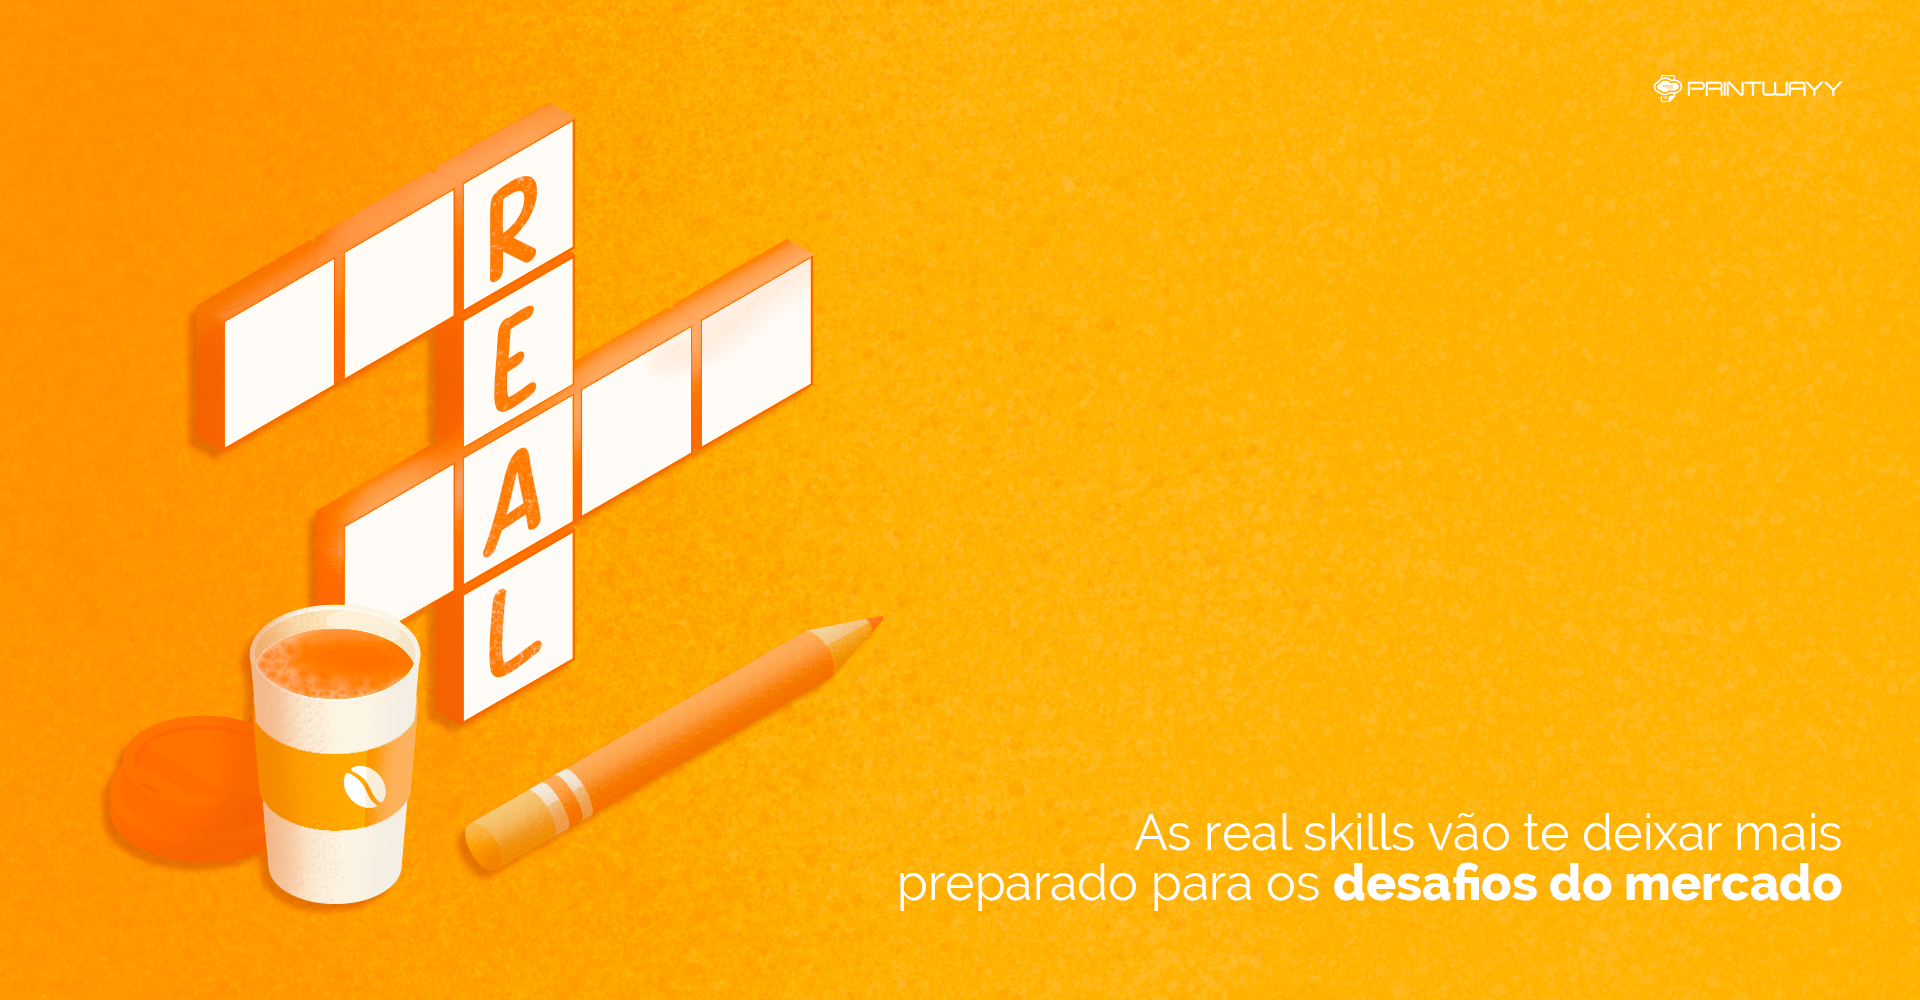 Jogo de palavras-cruzadas, onde está escrito o termo “real”, referindo-se às real skills mencionadas no artigo.